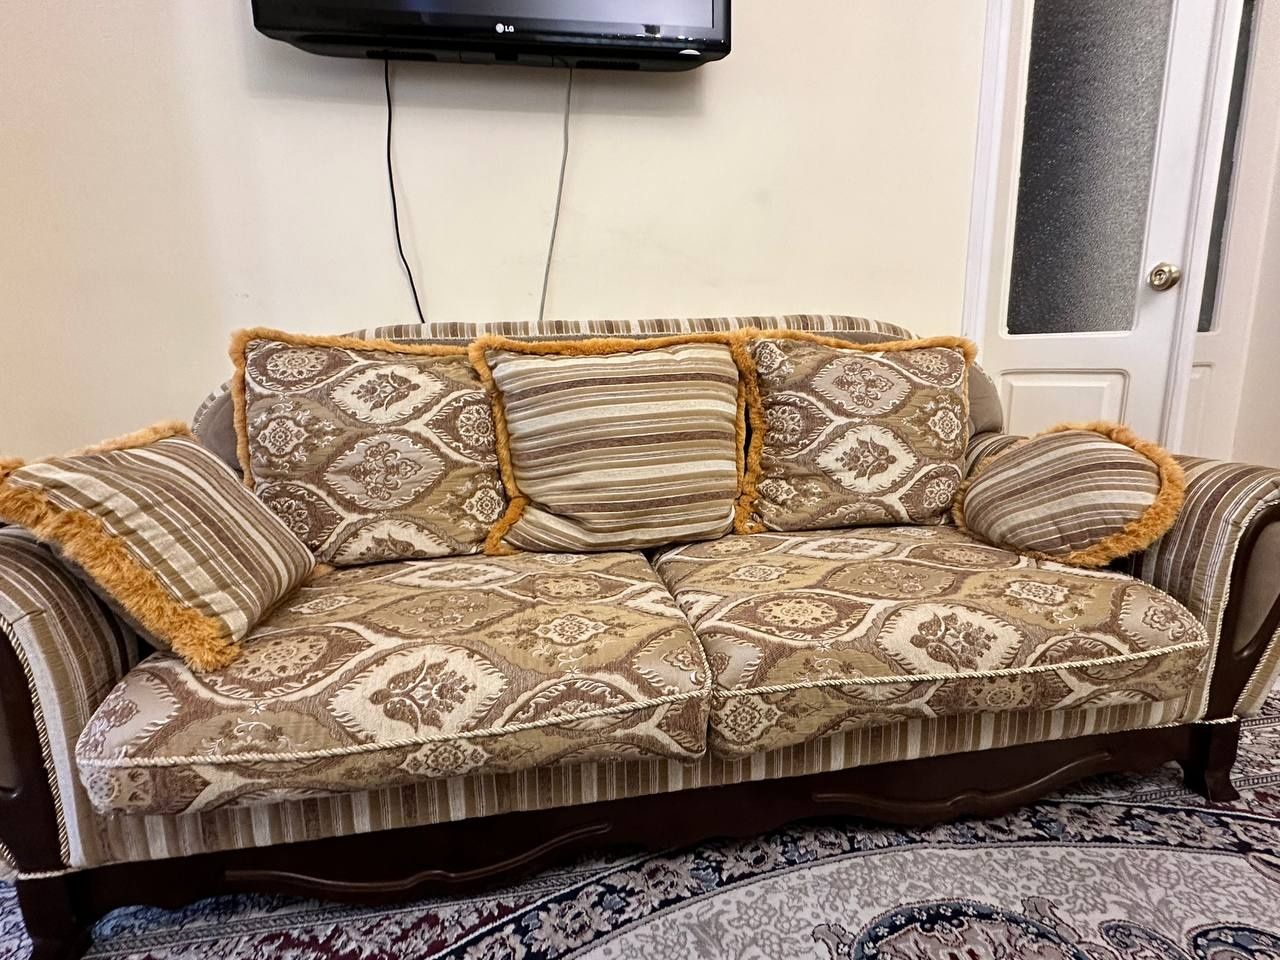 Мебель, диван. Продаётся комплект состоящий из дивана с подушками